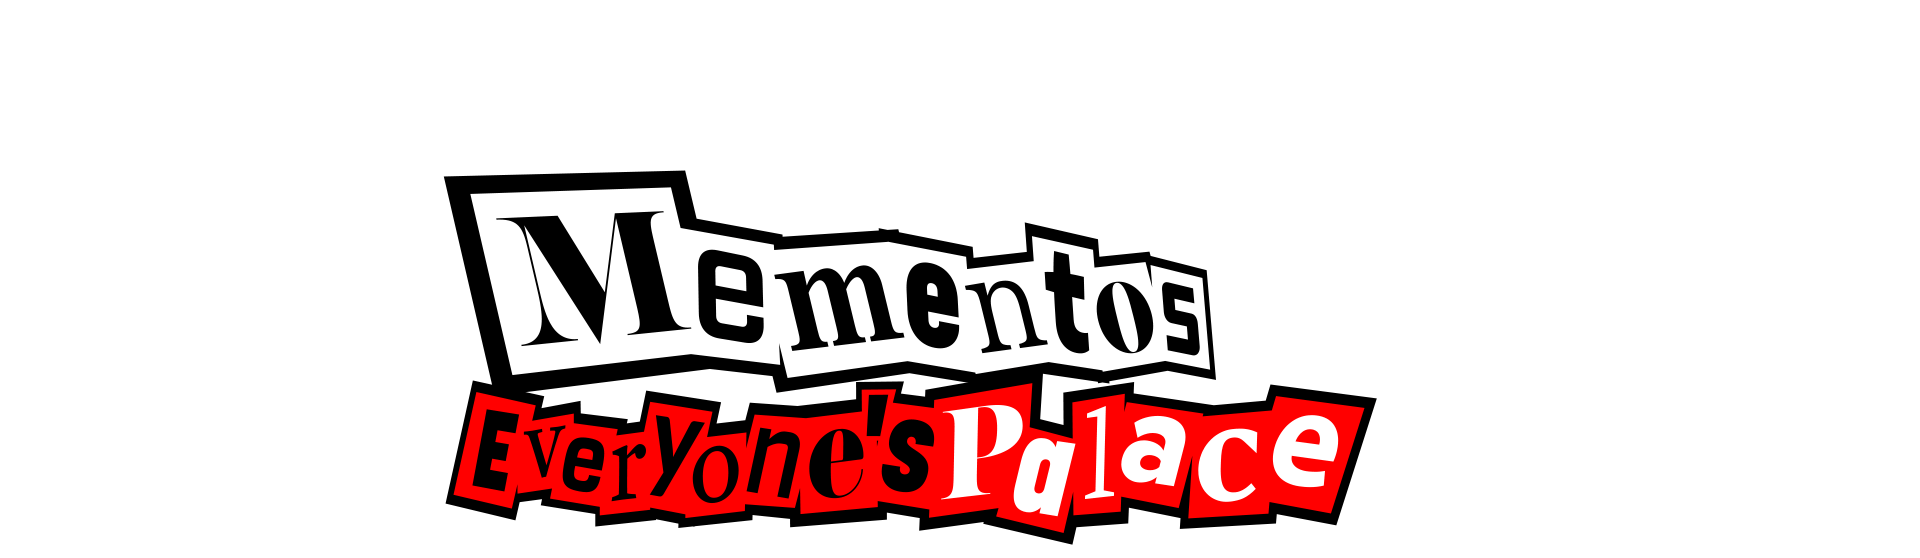 Mementos: Everyone's Palace